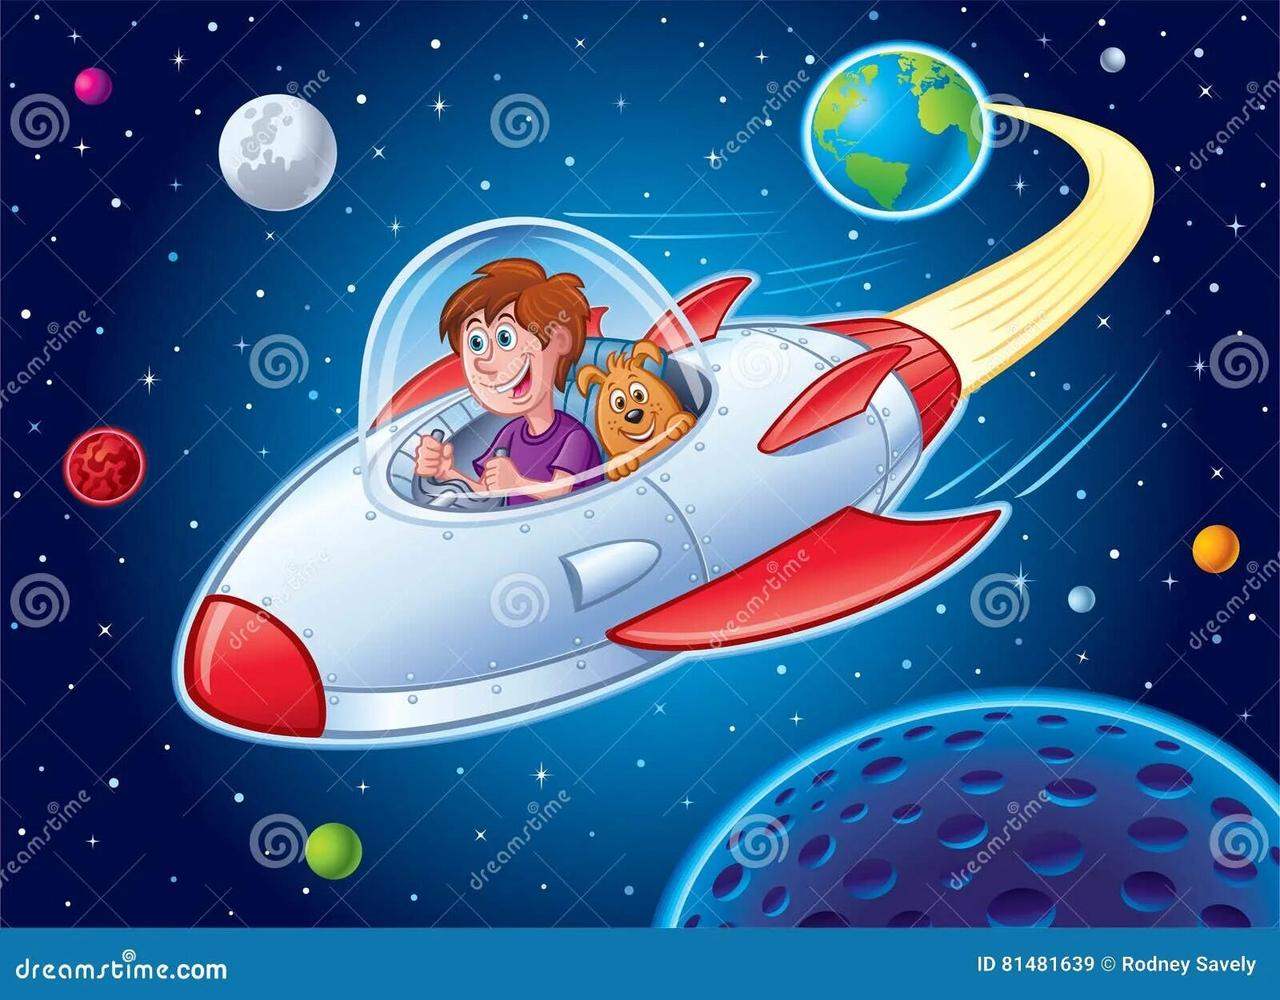 Иллюстрация космонавтов, летящих на ракете 9